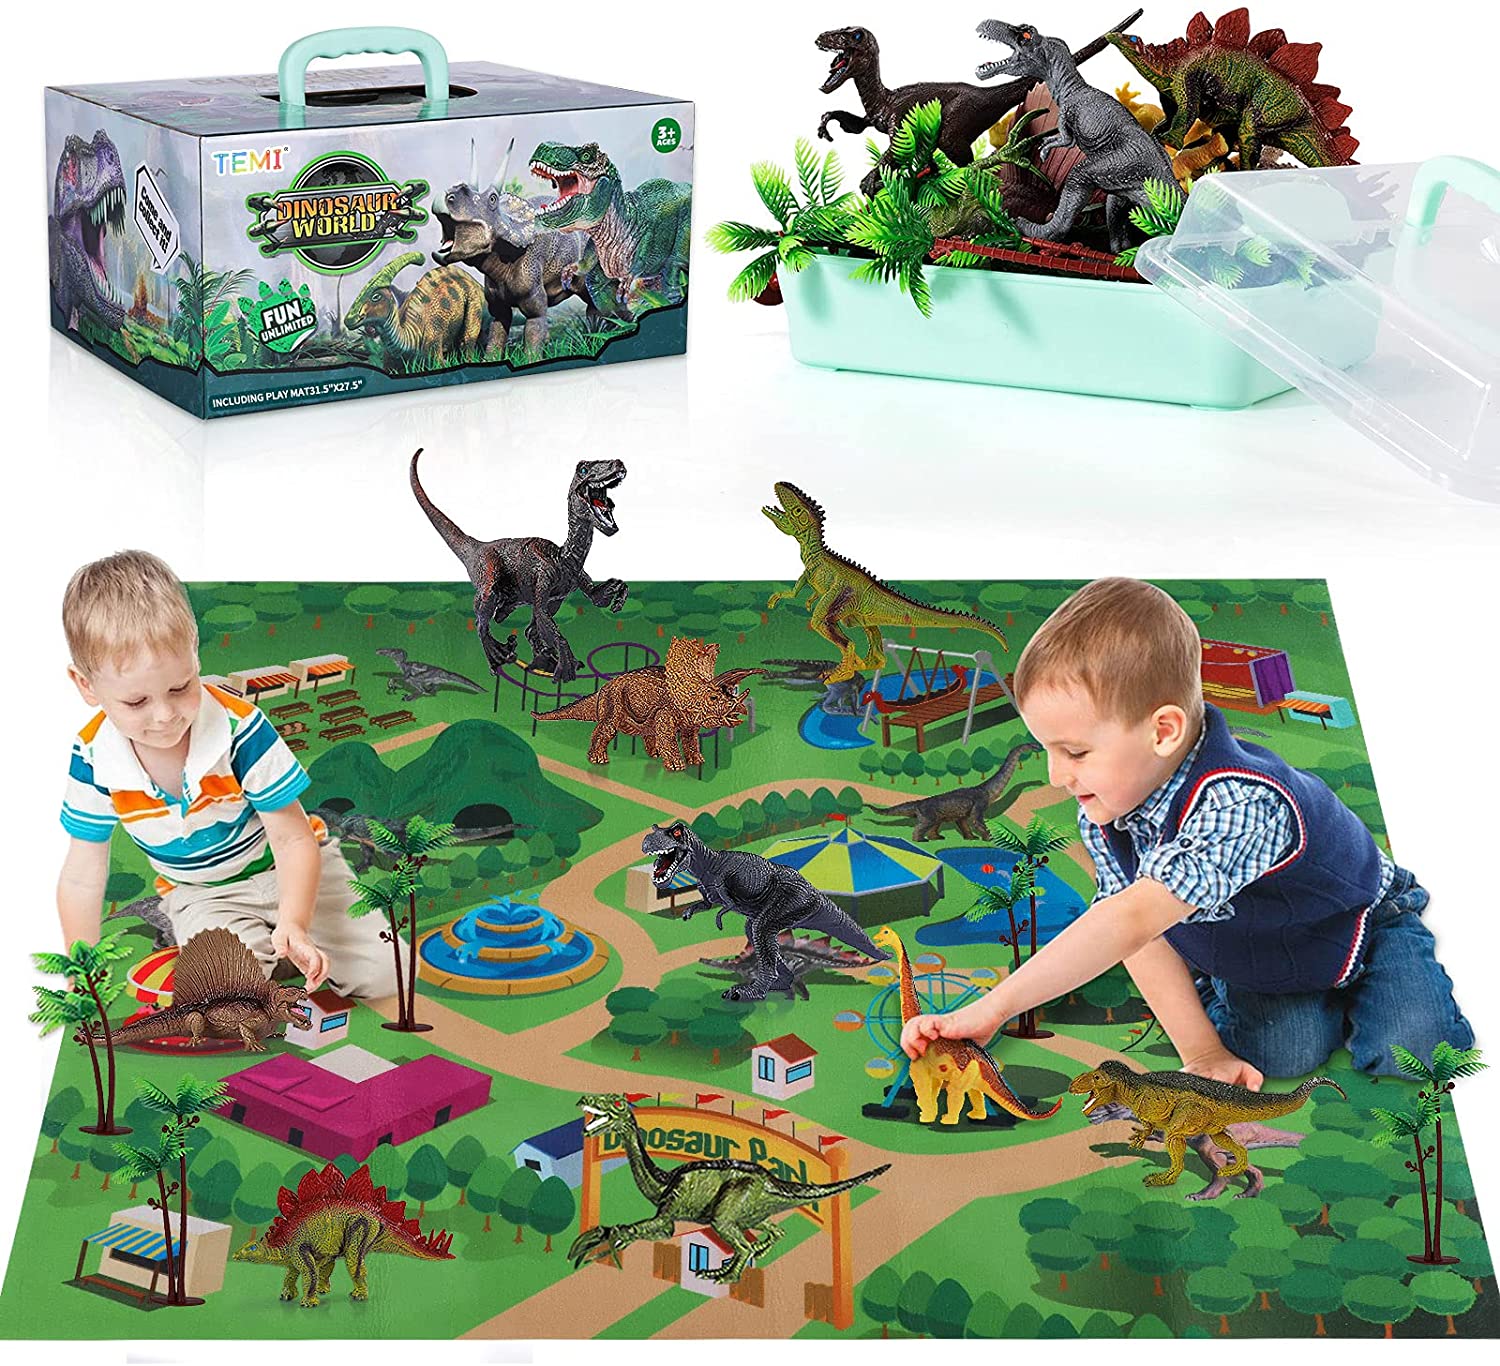 TEMI Dinosaur Park Themed Play Mat & Figures Dinosaur Gifts For Boys, 16-Piece